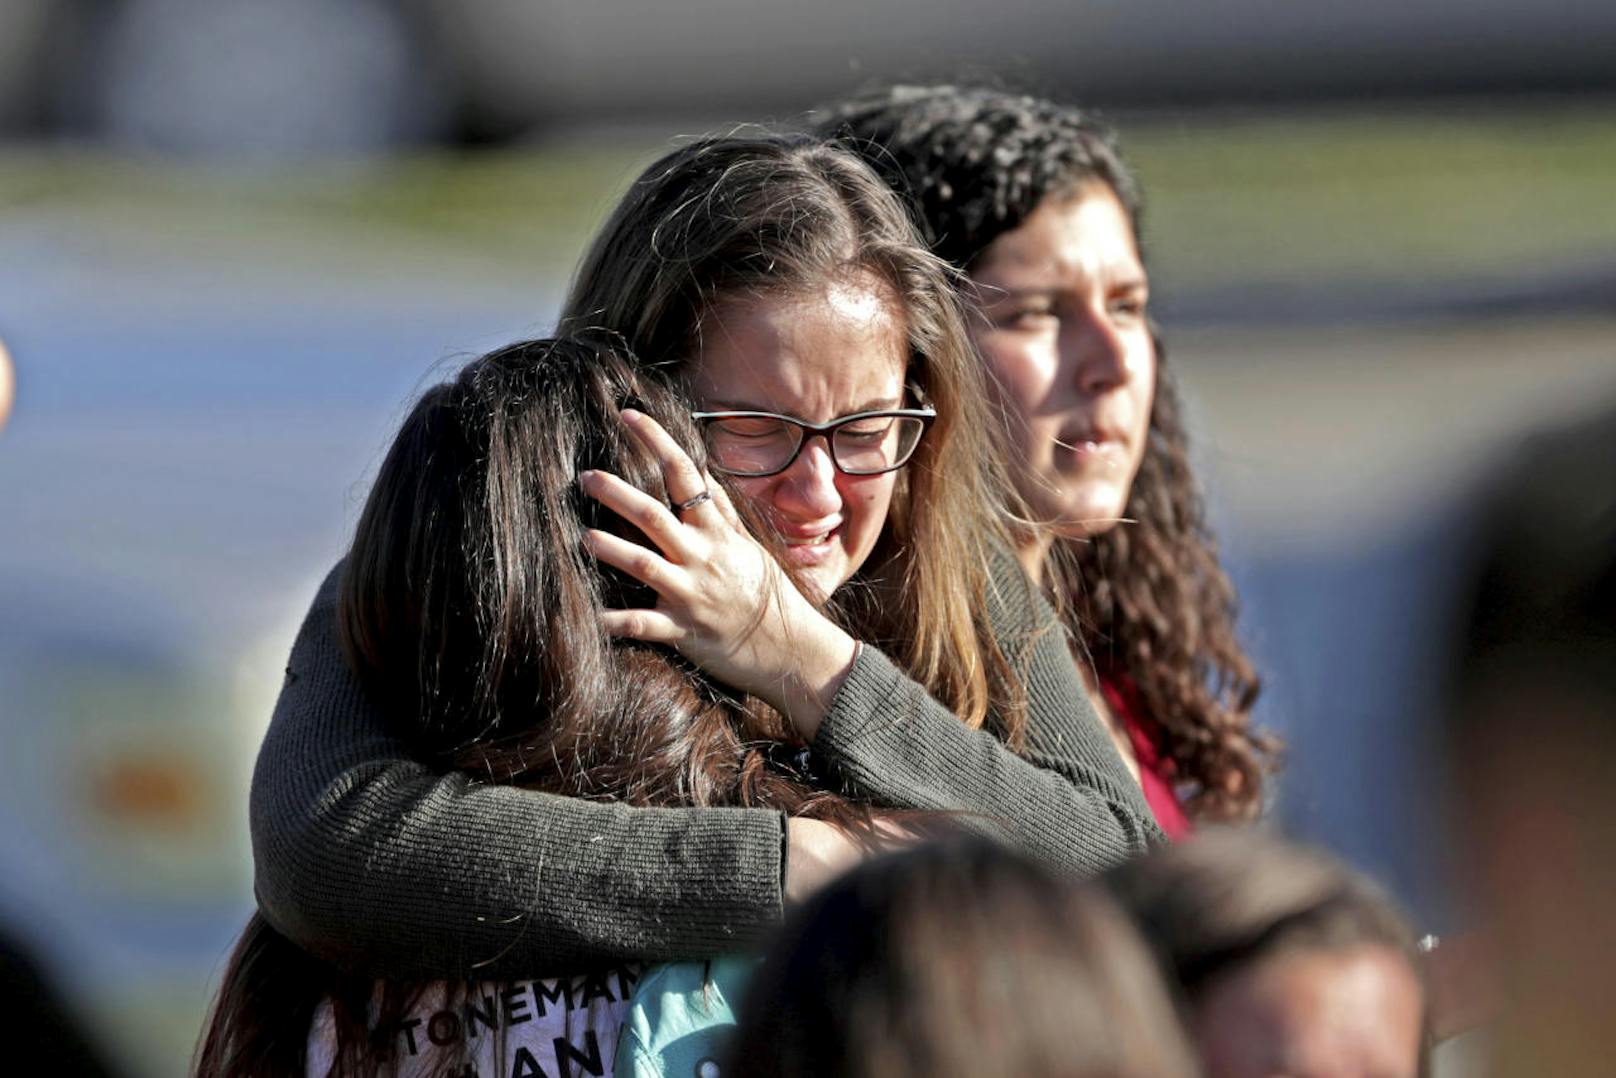 Bei einem Amoklauf an einer Schule im US-Bundesstaat Florida wurden 17 Menschen getötet, Dutzende weitere verletzt. 